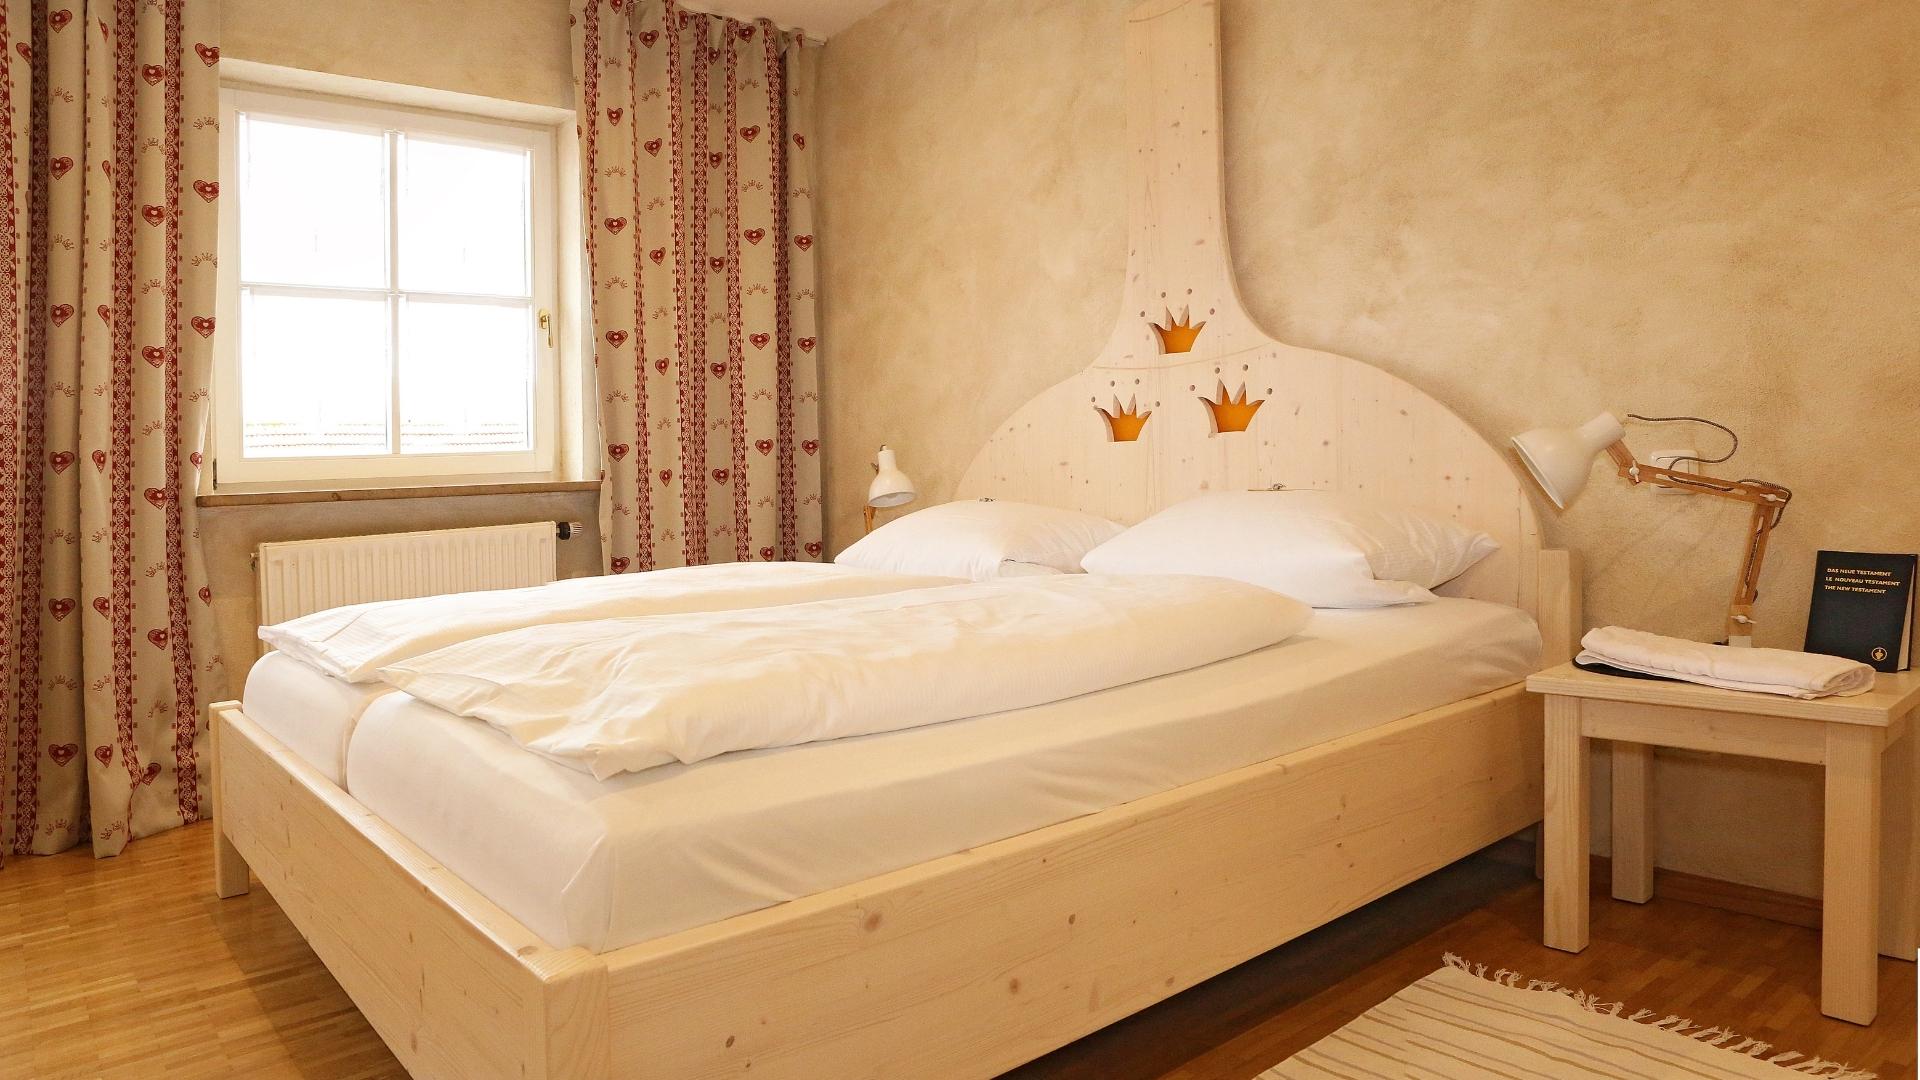 Sudpfannenbett im Hotelzimmer Nummer 24 der Kategorie Brauhaus Plus+ | © Frankenhotel Drei Kronen Memmelsdorf GmbH